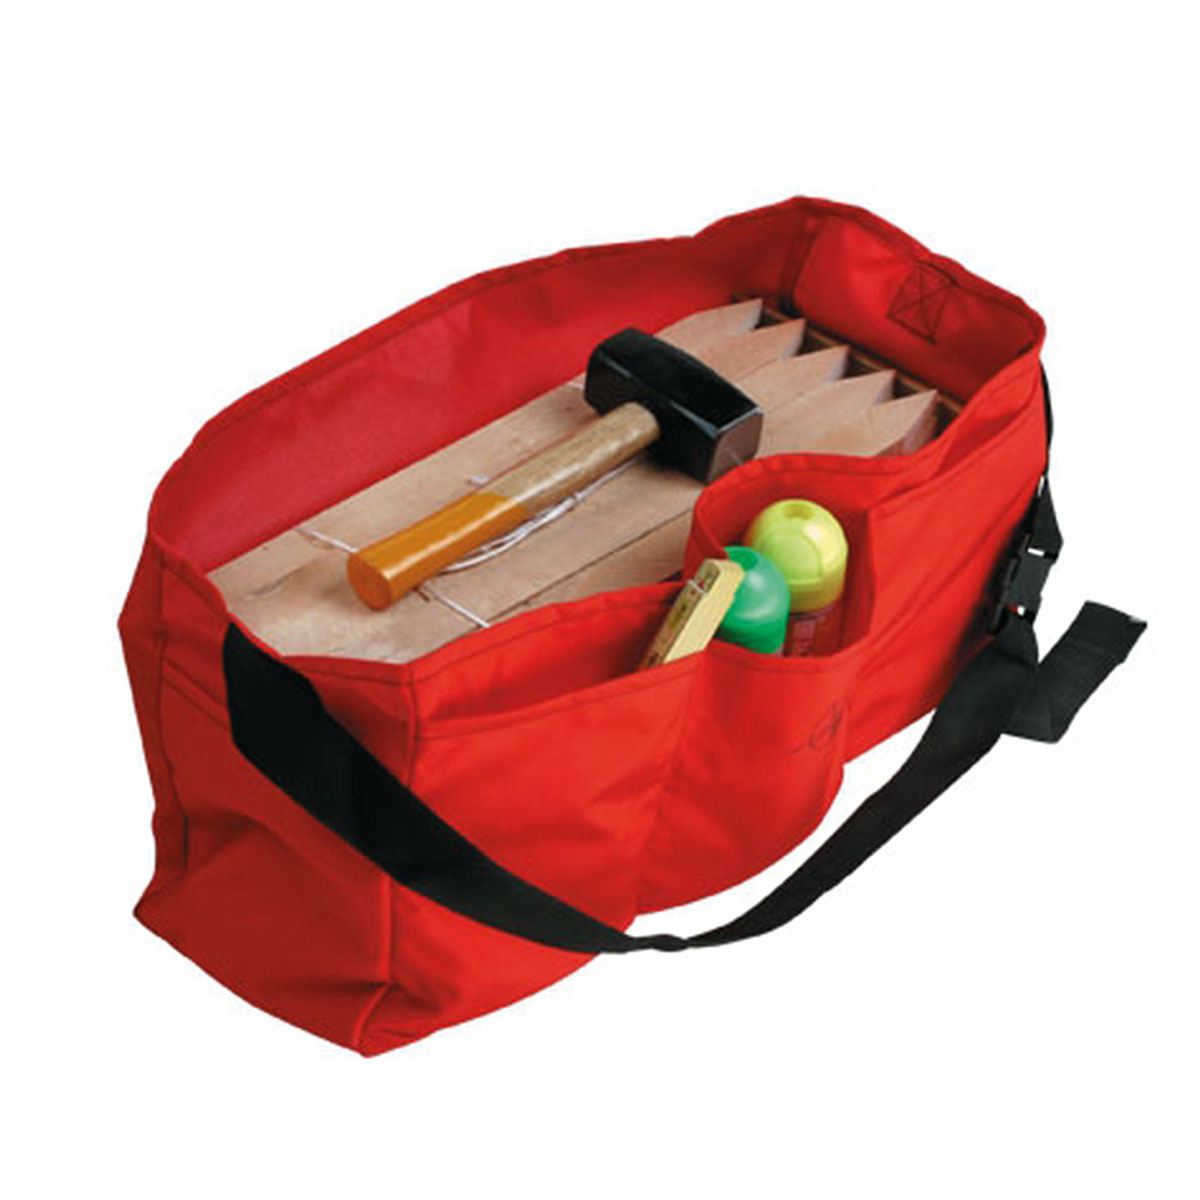 Transporttasche für 50 Holzpflöcke 560 x 200 x 300 mm,orange, wasserabweisend